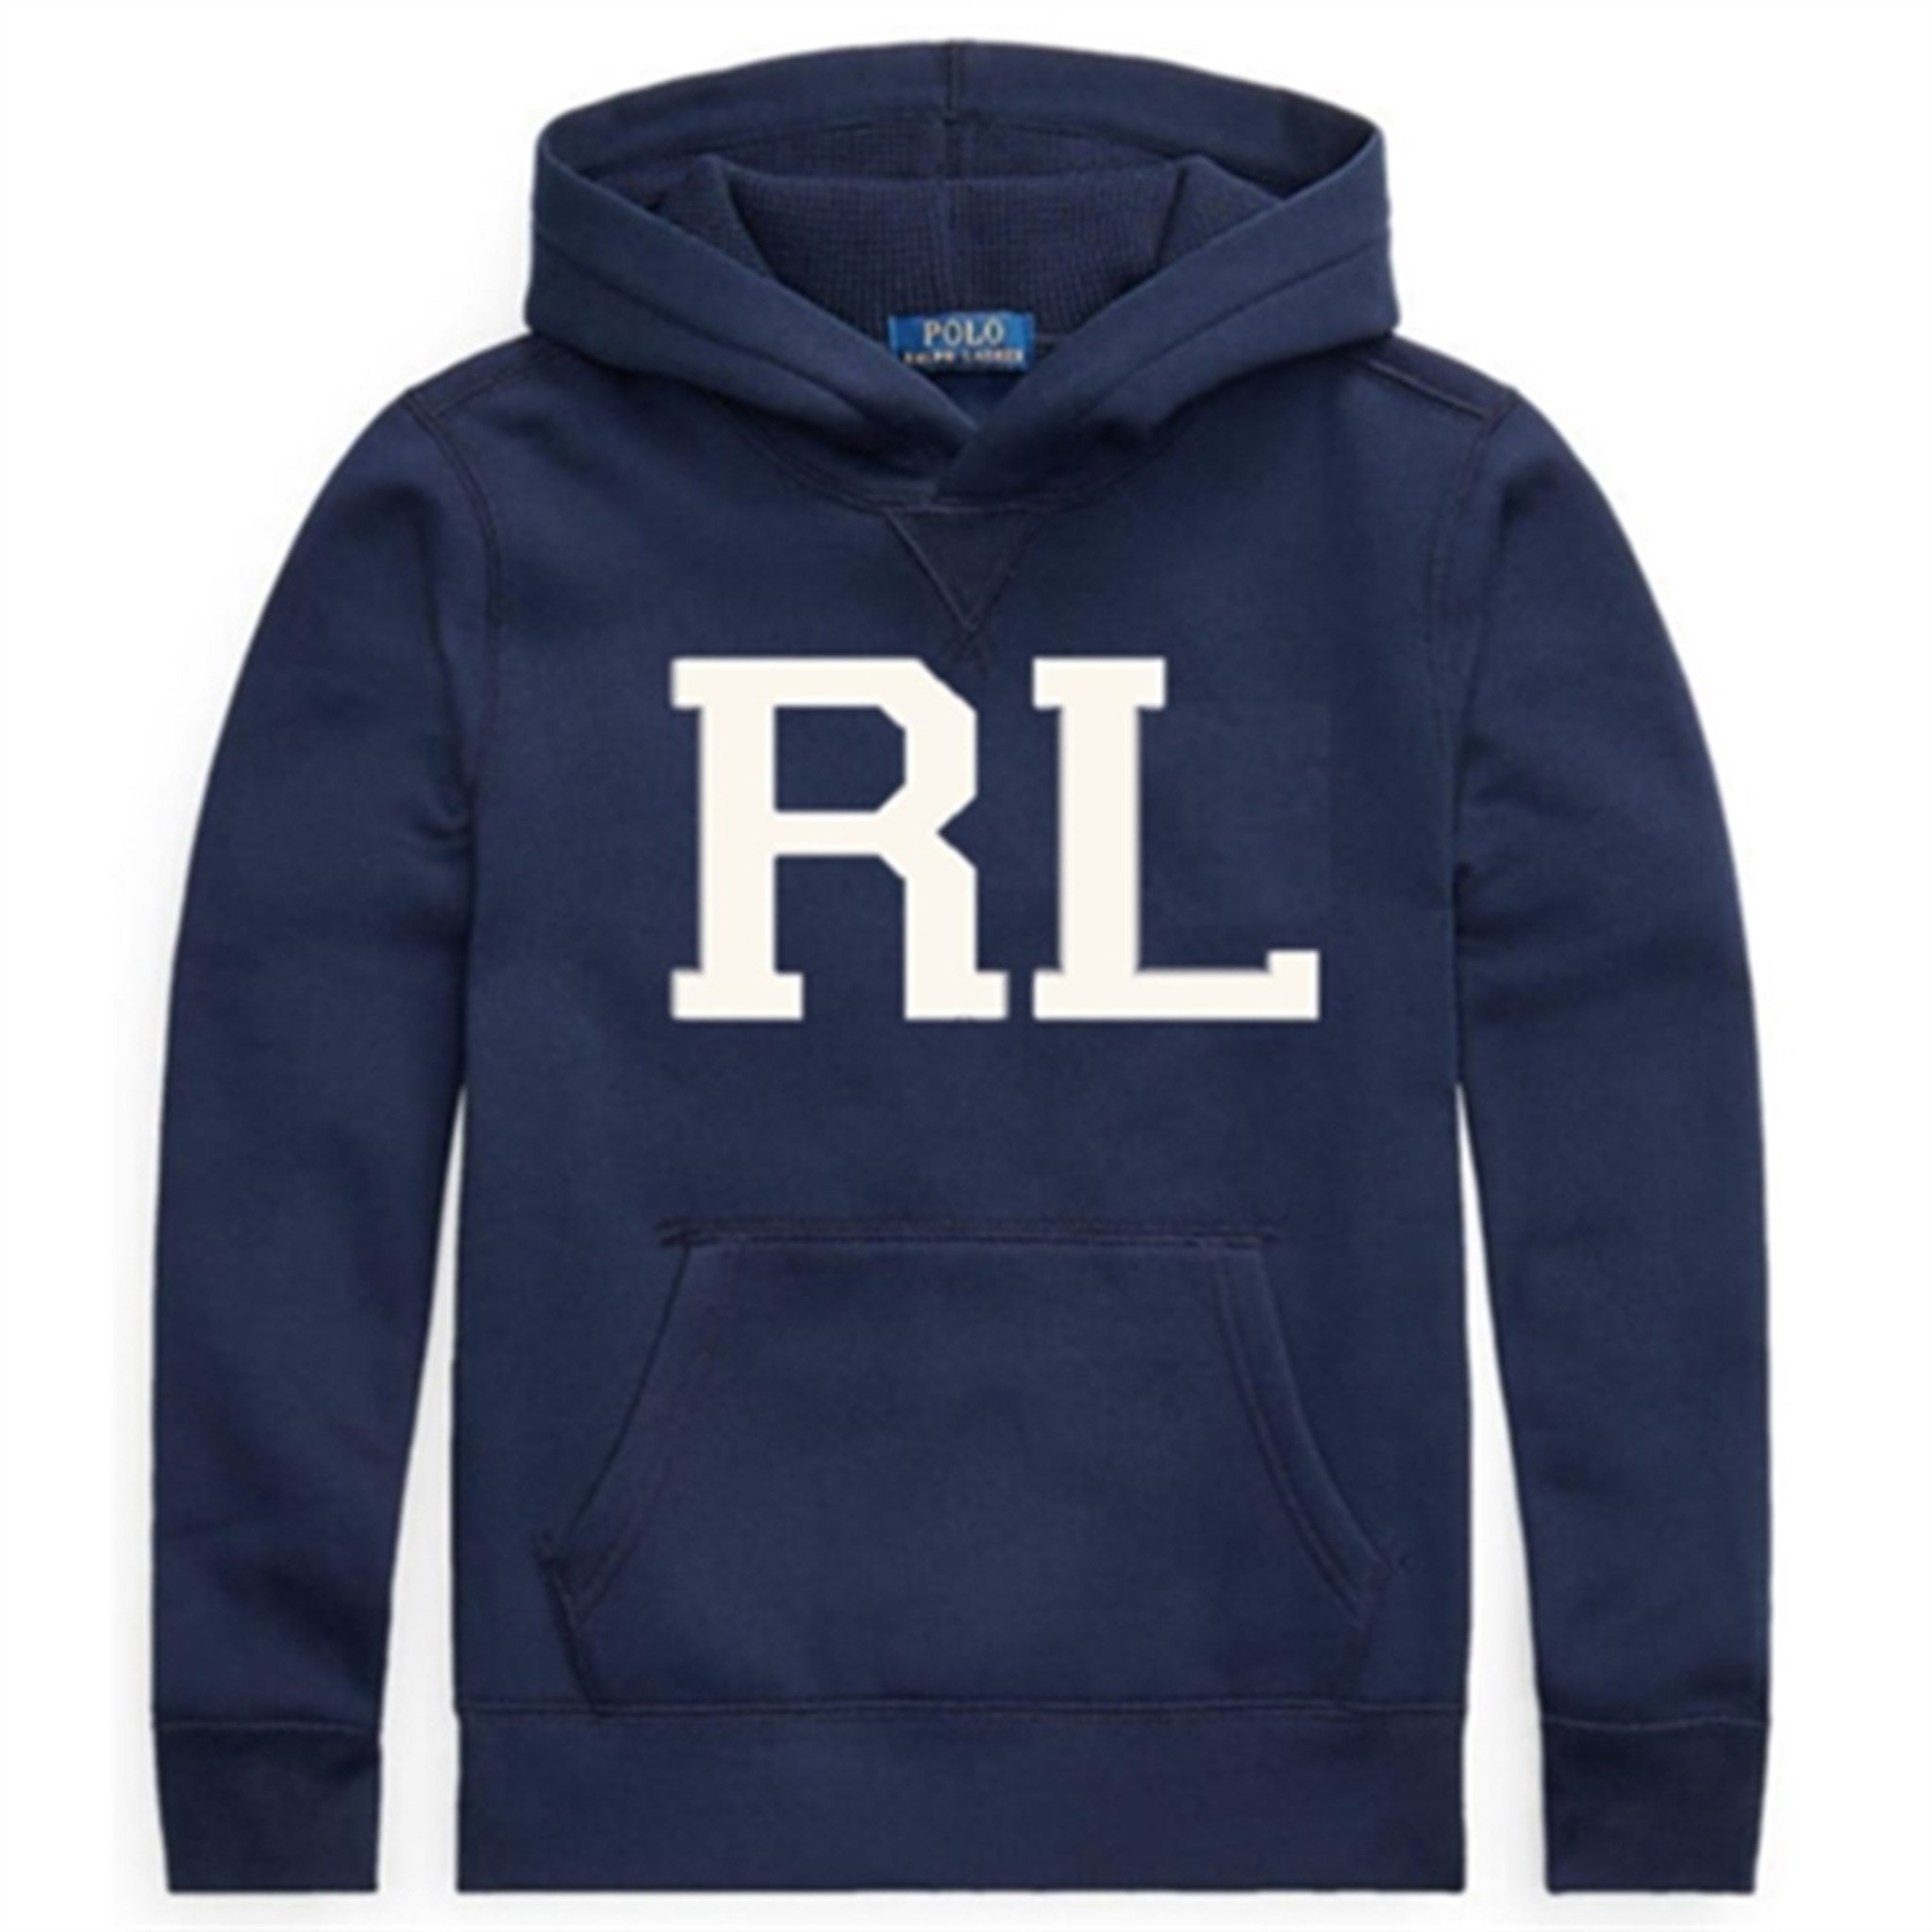 Polo Ralph Lauren Sweatshirt Navy